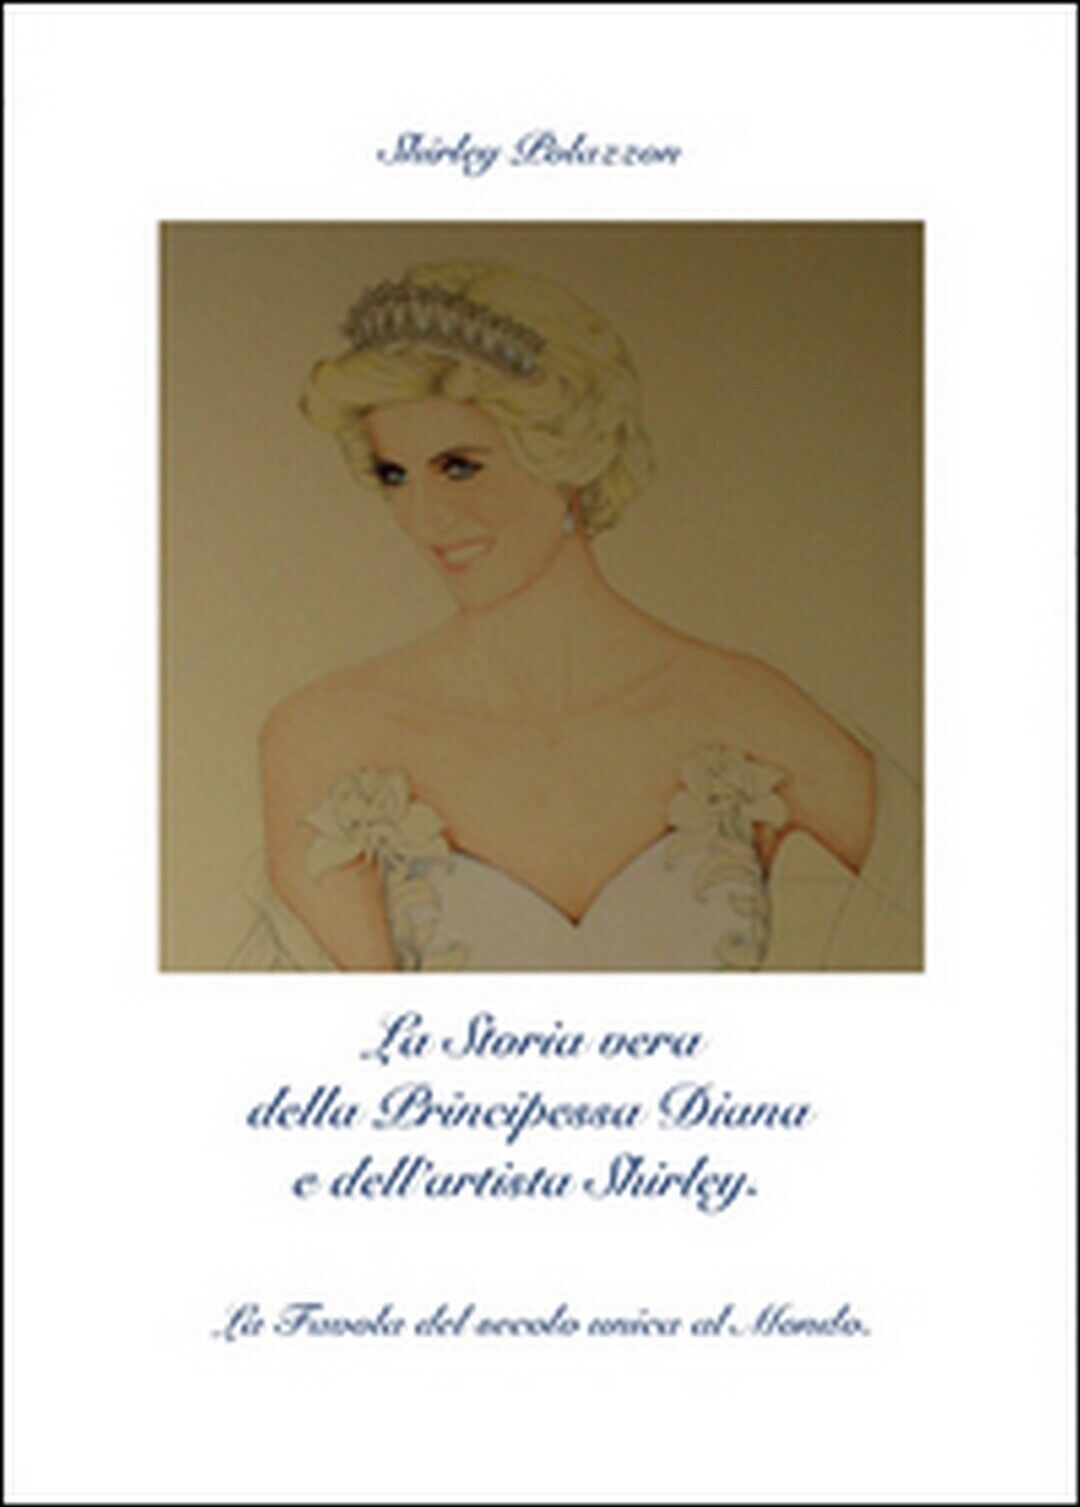 La storia vera della principessa Diana e delL'artista Shirley (S. Polazzon)